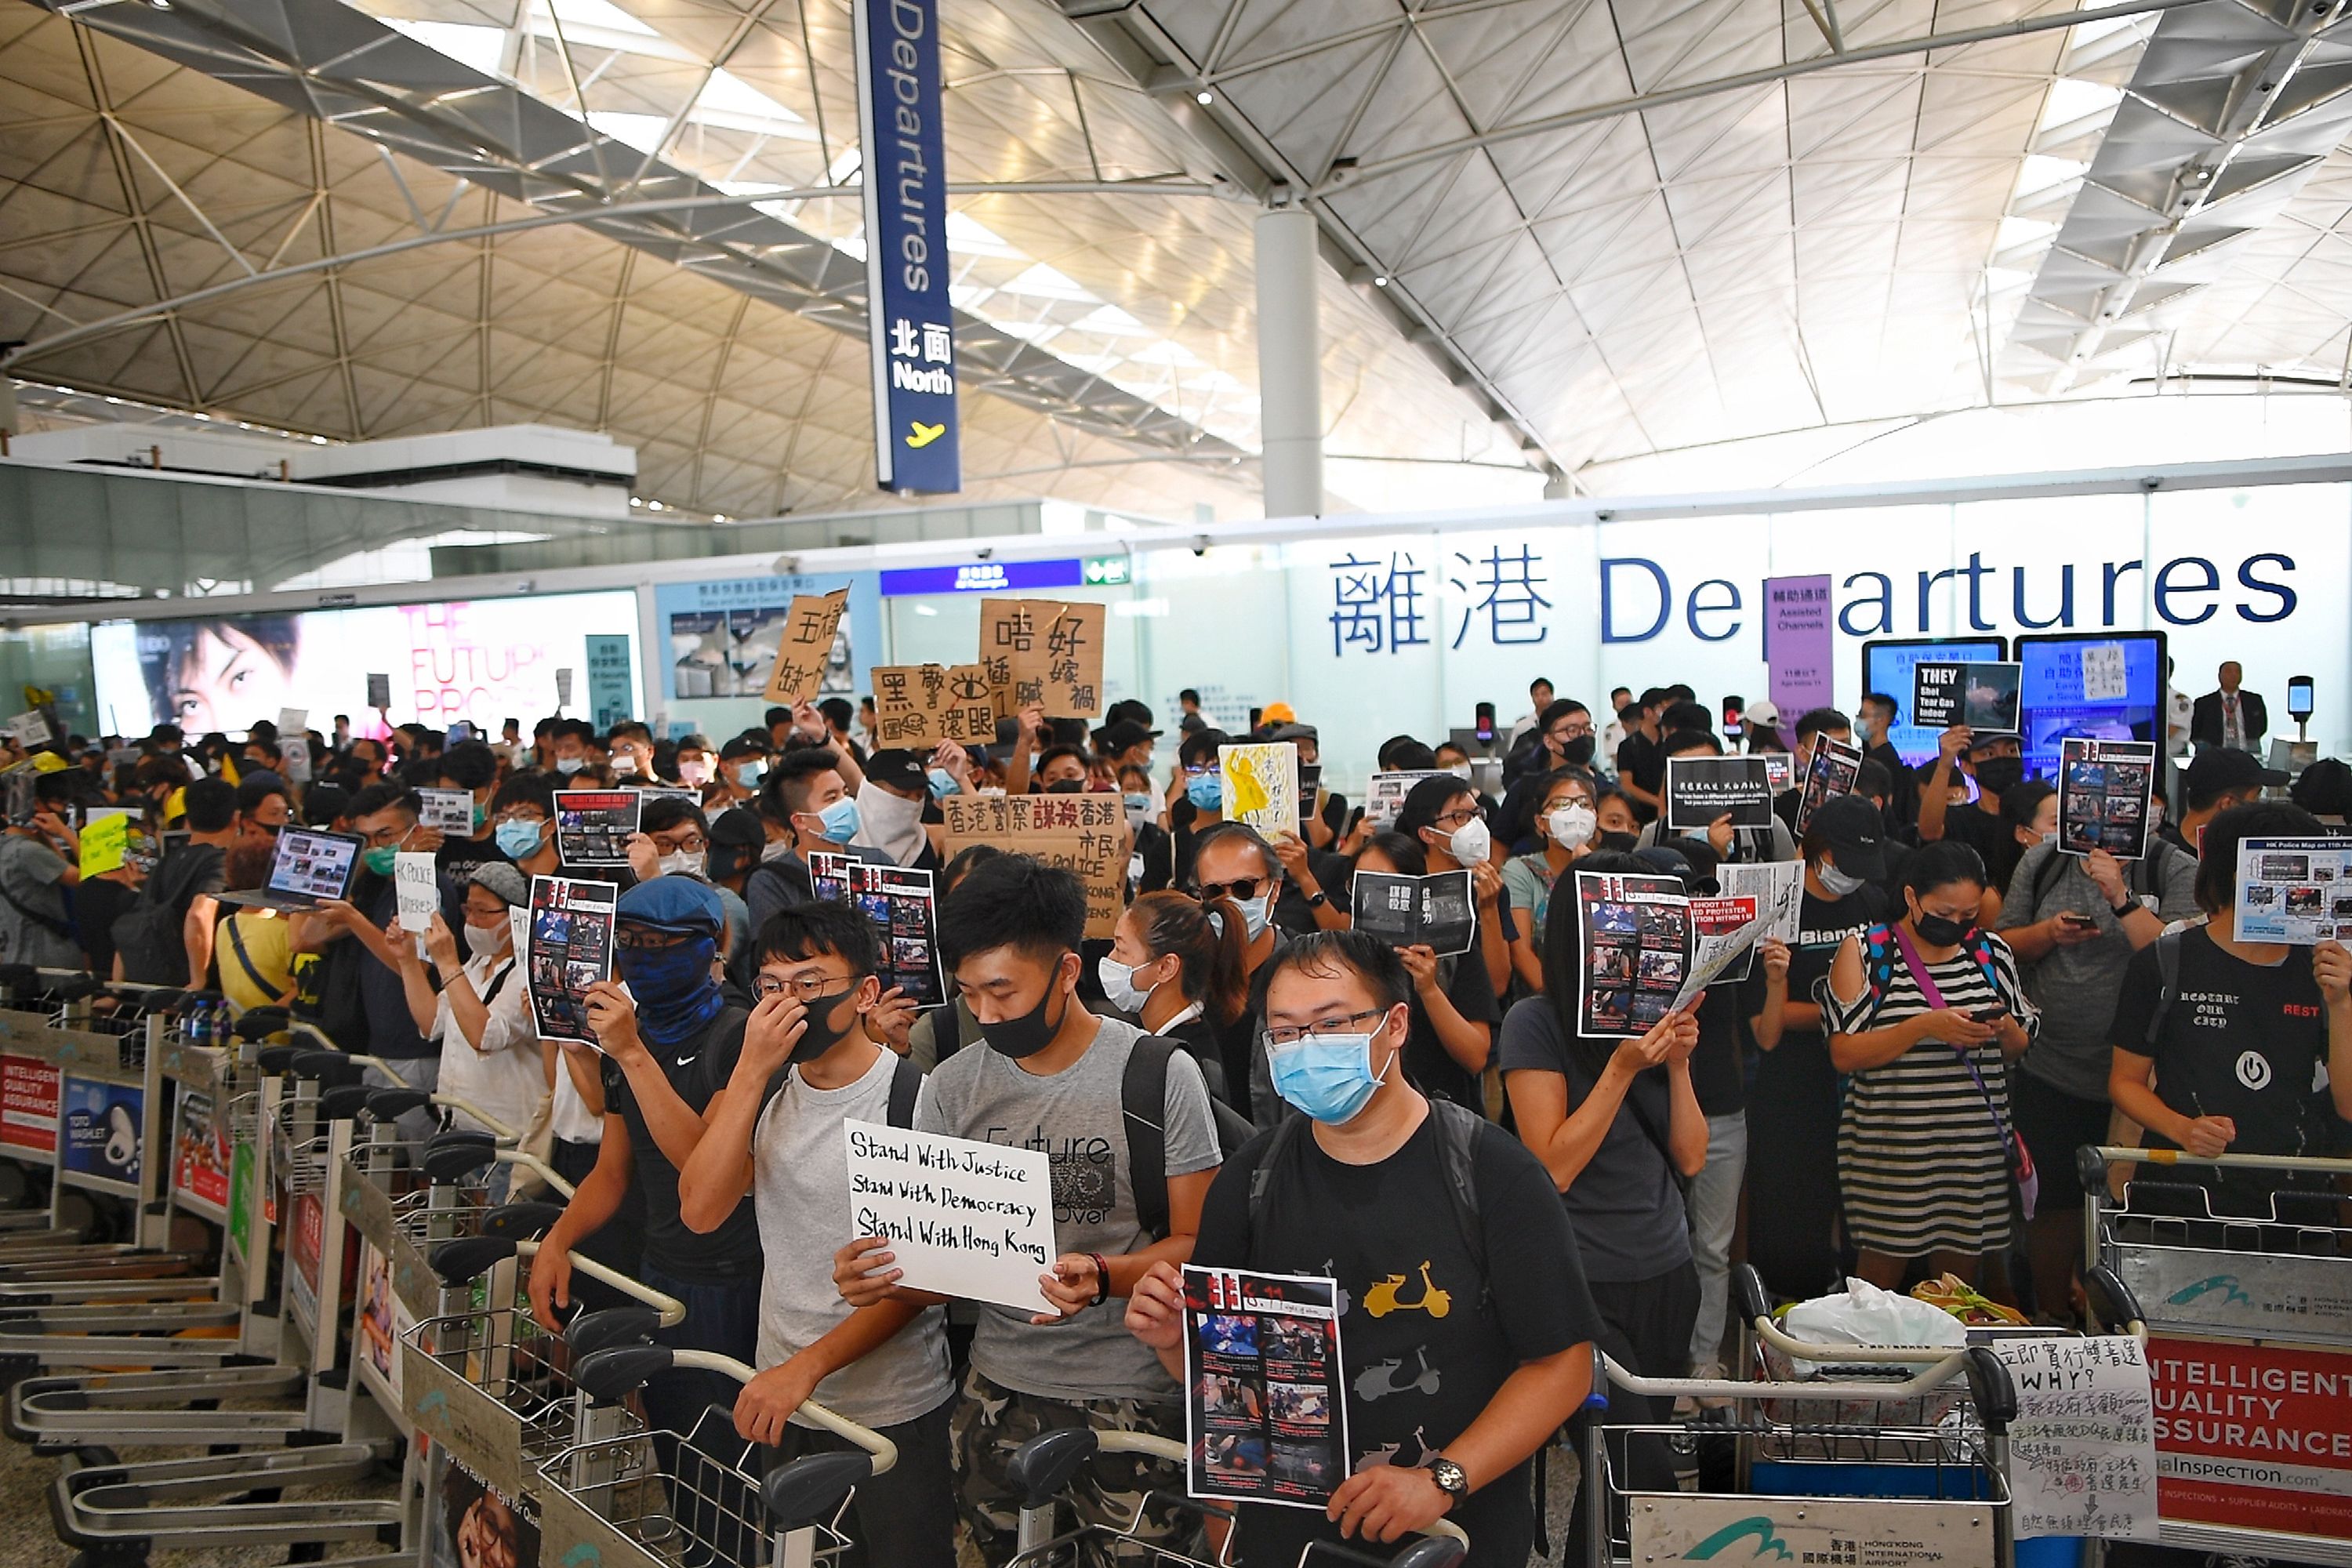 Los manifestantes de Hong Kong bloquearon las puertas de salida en rechazo a la brutalidad policial y a un controvertido proyecto de ley (Foto Prensa Libre AFP)